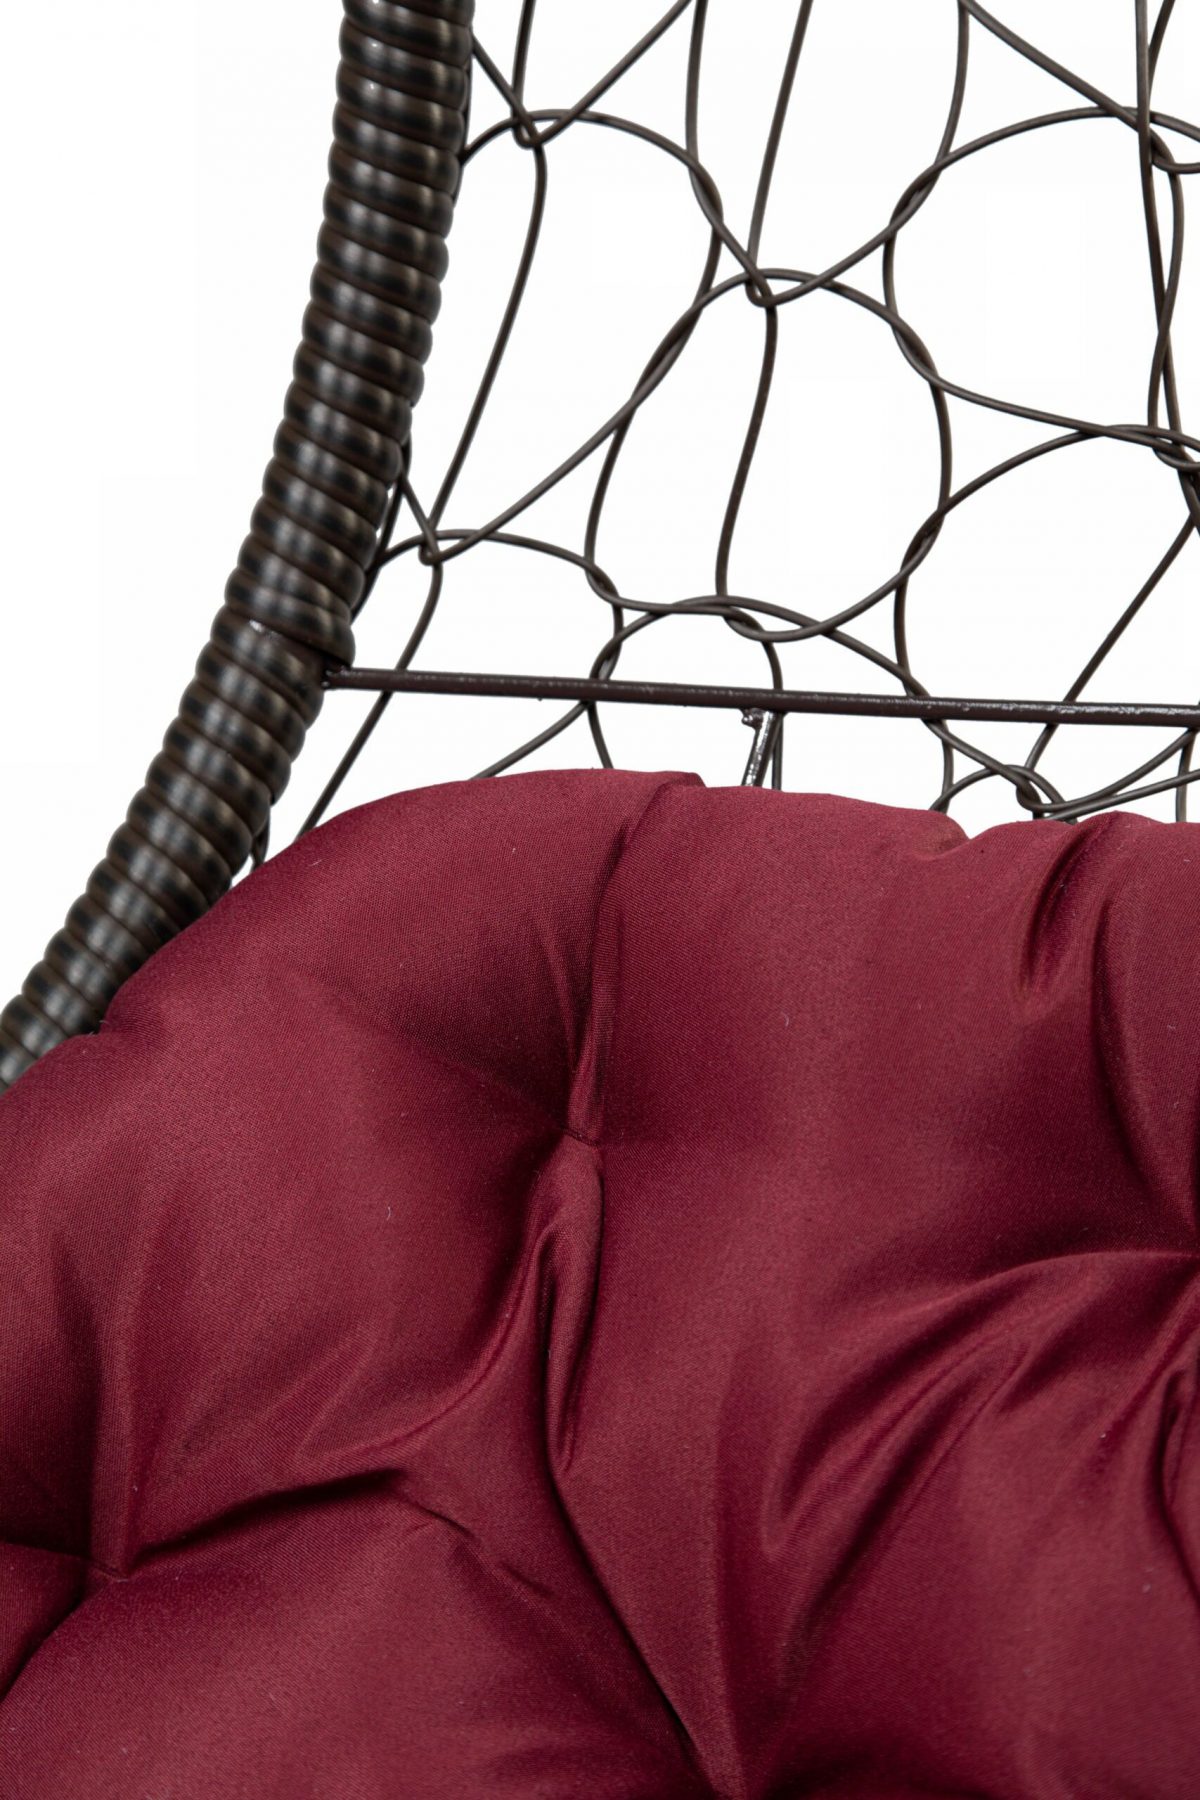 Кресло подвесное БРИЗ, цвет темно-коричневый, подушка – бордовый